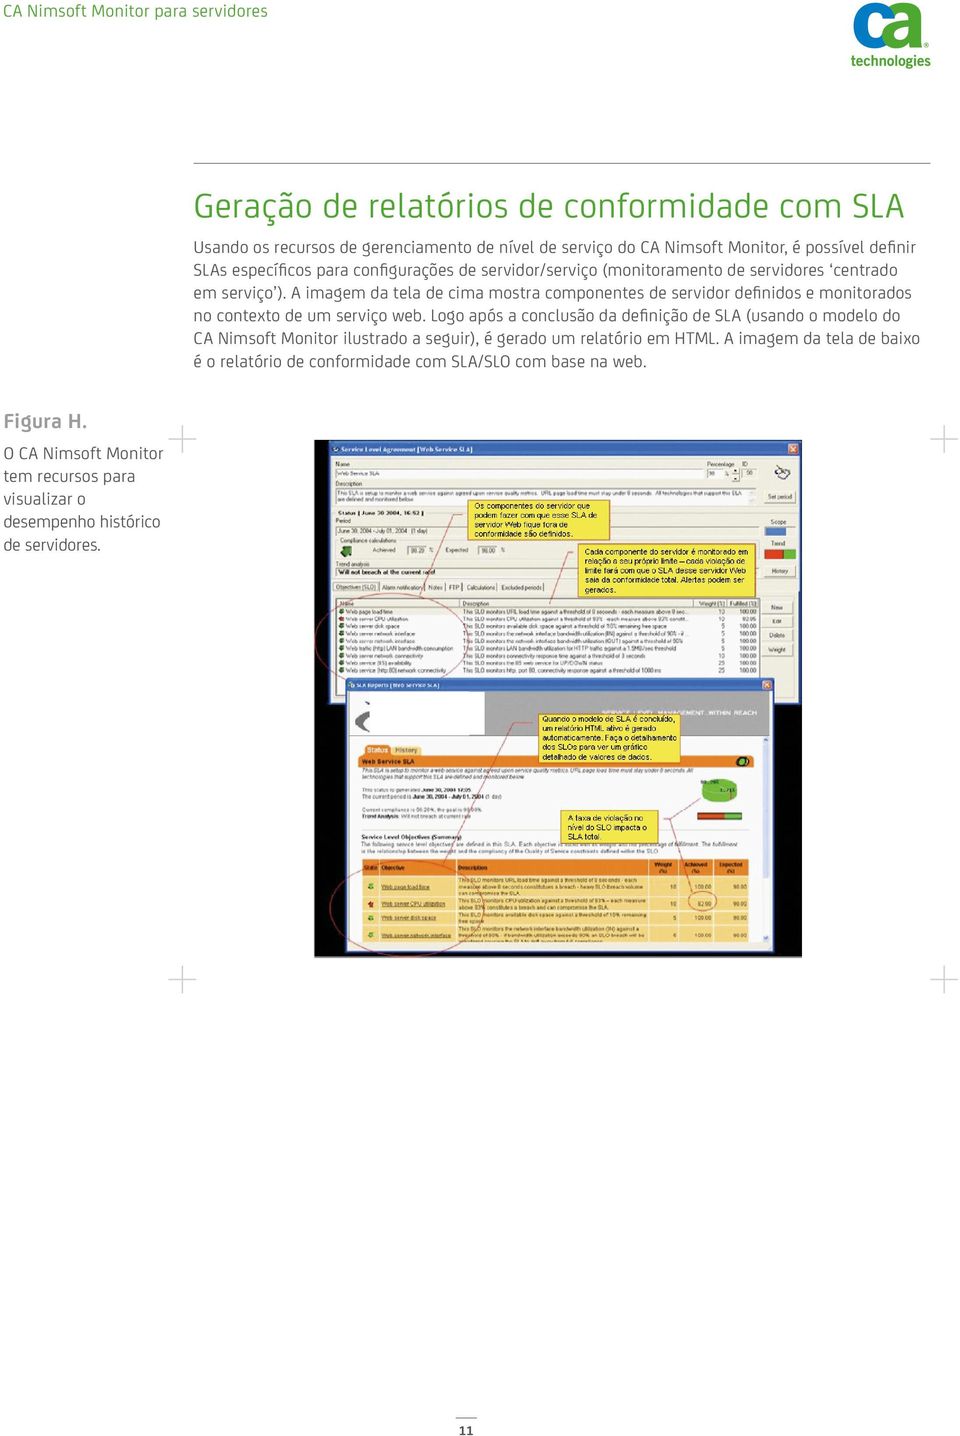 A imagem da tela de cima mostra componentes de servidor definidos e monitorados no contexto de um serviço web.